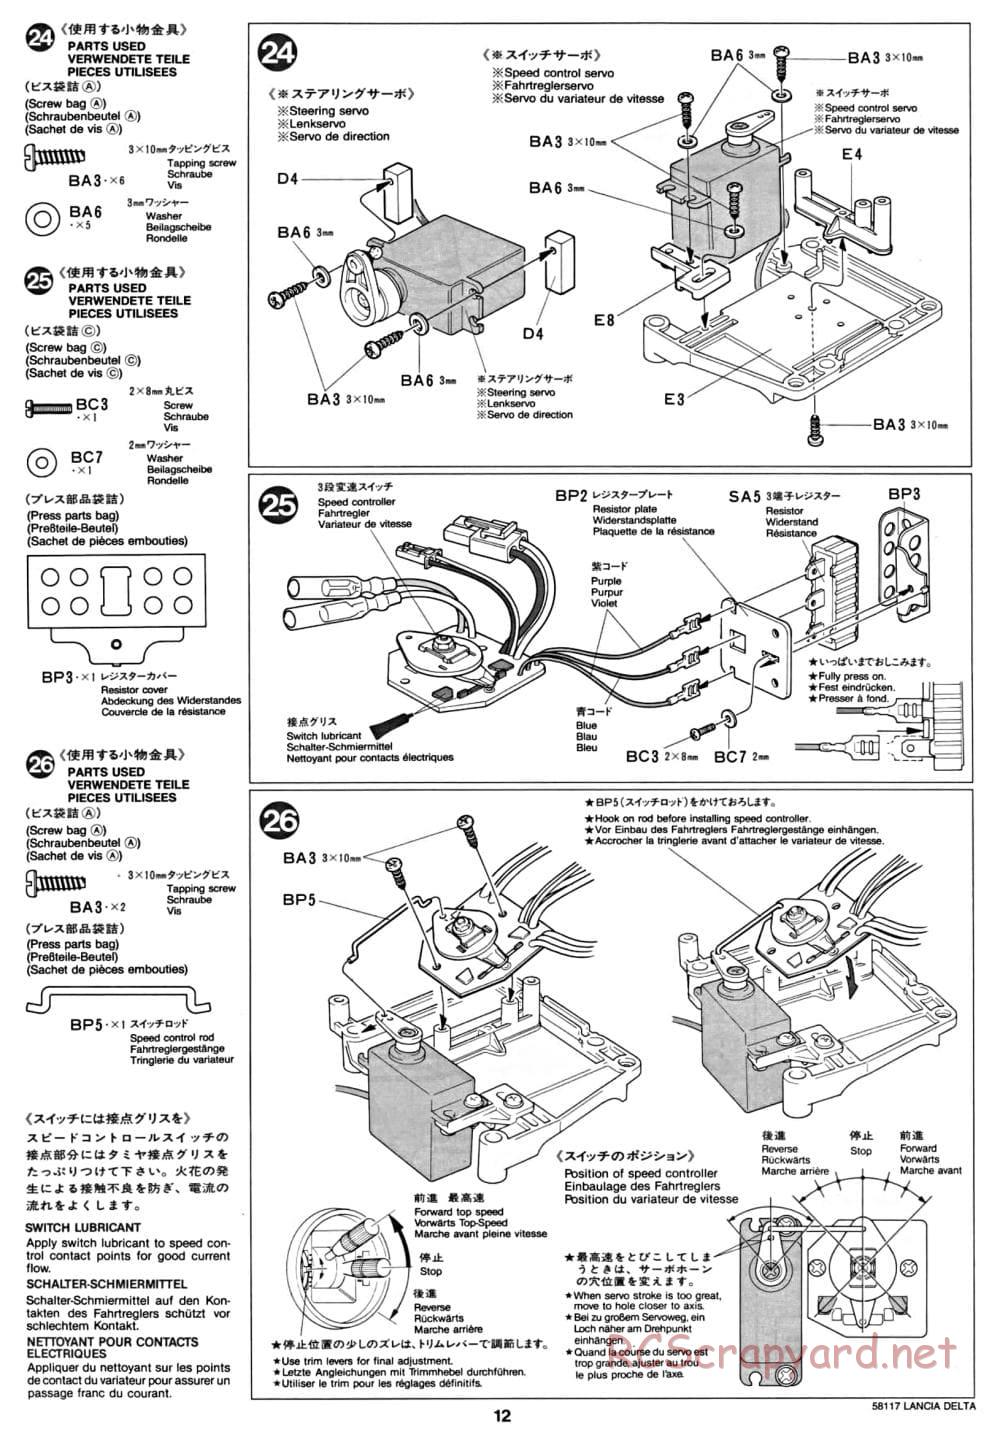 Tamiya - Lancia Delta HF Integrale - TA-01 Chassis - Manual - Page 12